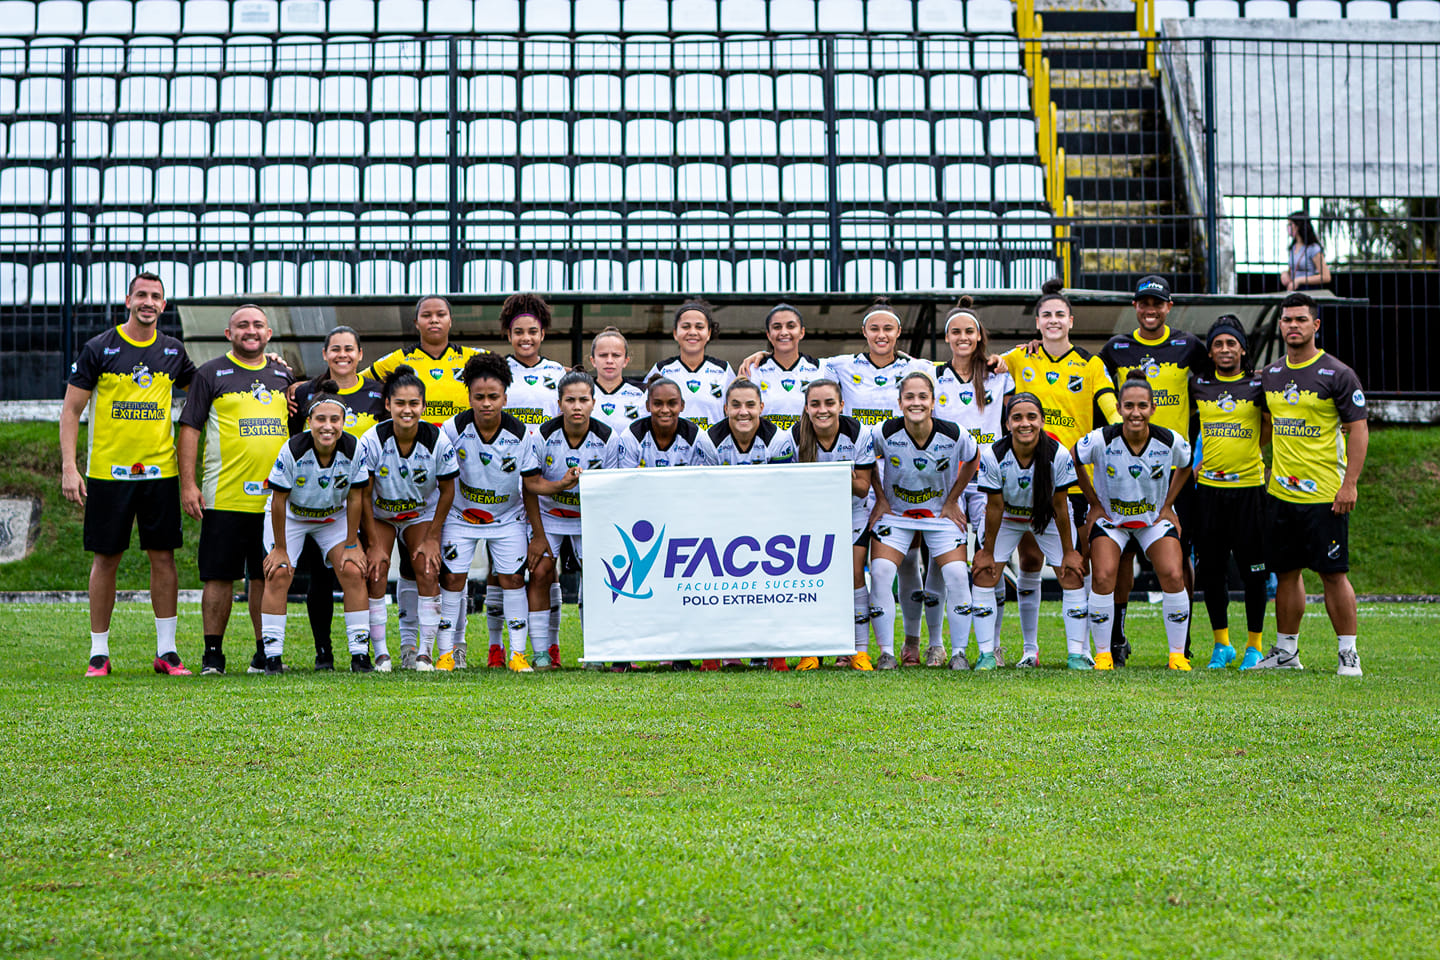 Futebol feminino: time potiguar com 40 anos de tradição enfrenta dificuldades para se manter